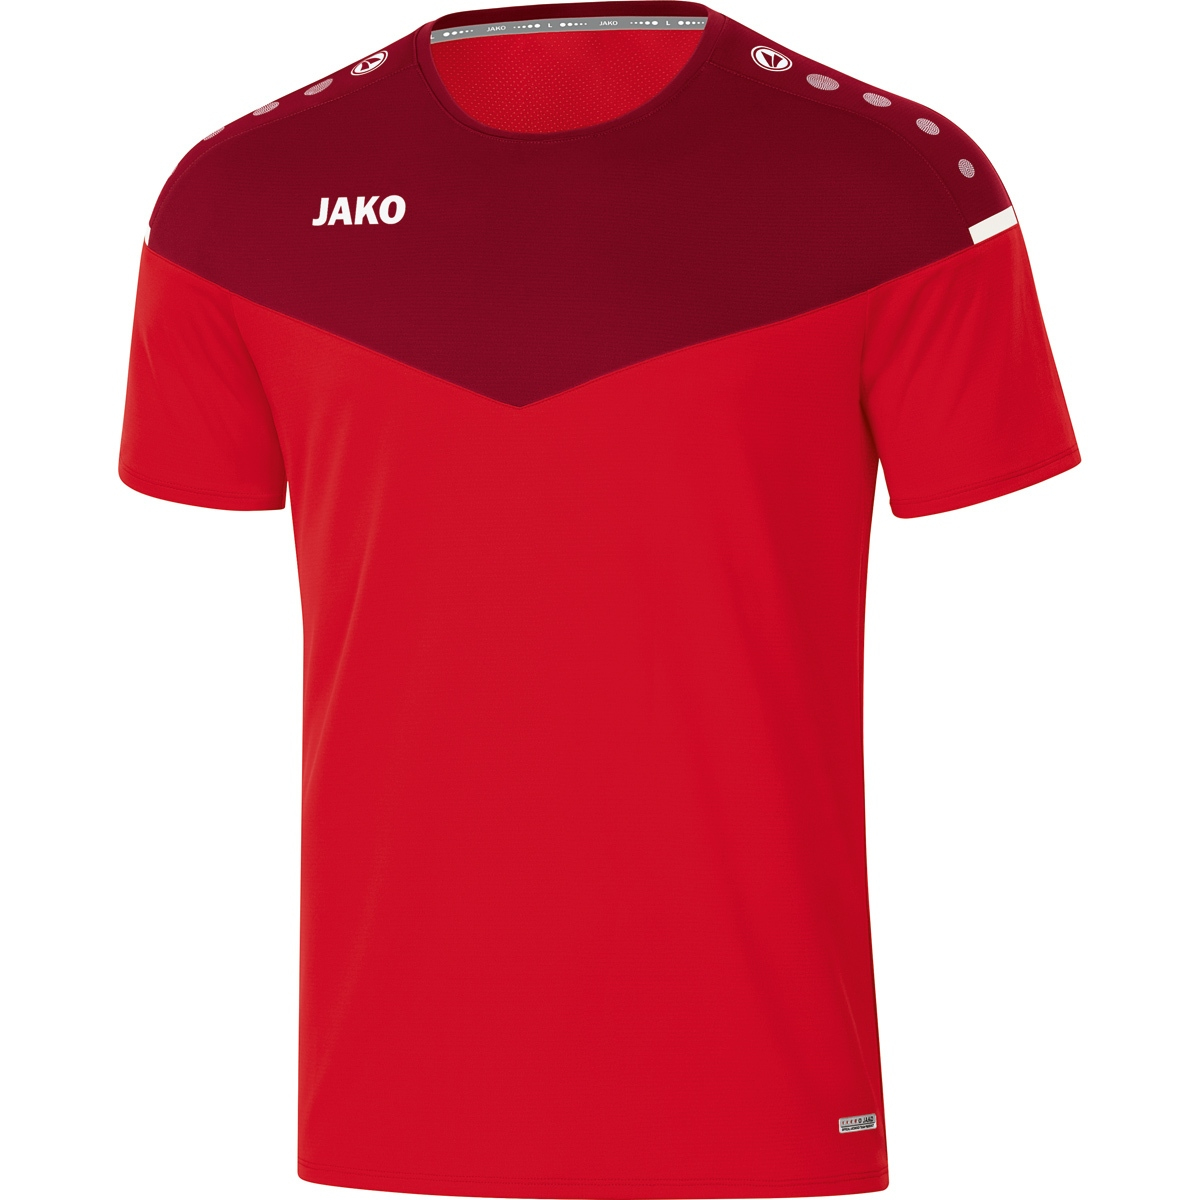 Champ XL, Herren, T-Shirt 2.0 JAKO Gr. 6120 rot/weinrot,